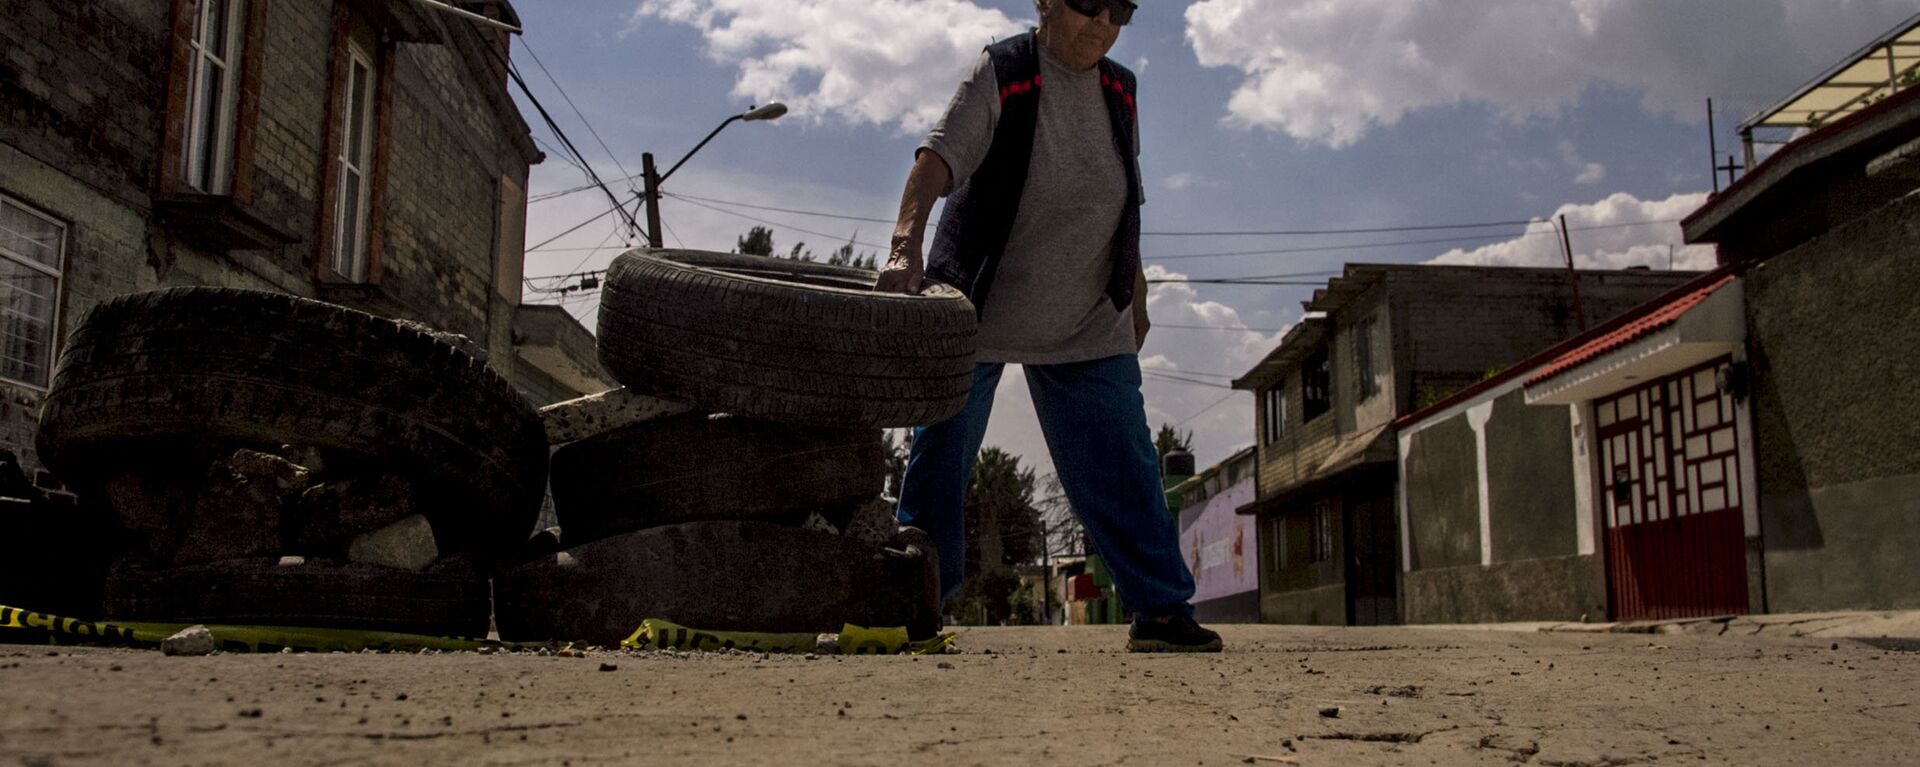 Esperanza coloca neumáticos en las calles dañadas de la Colonia del Mar tras el sismo del 19 de septiembre de 2017. - Sputnik Mundo, 1920, 19.07.2018